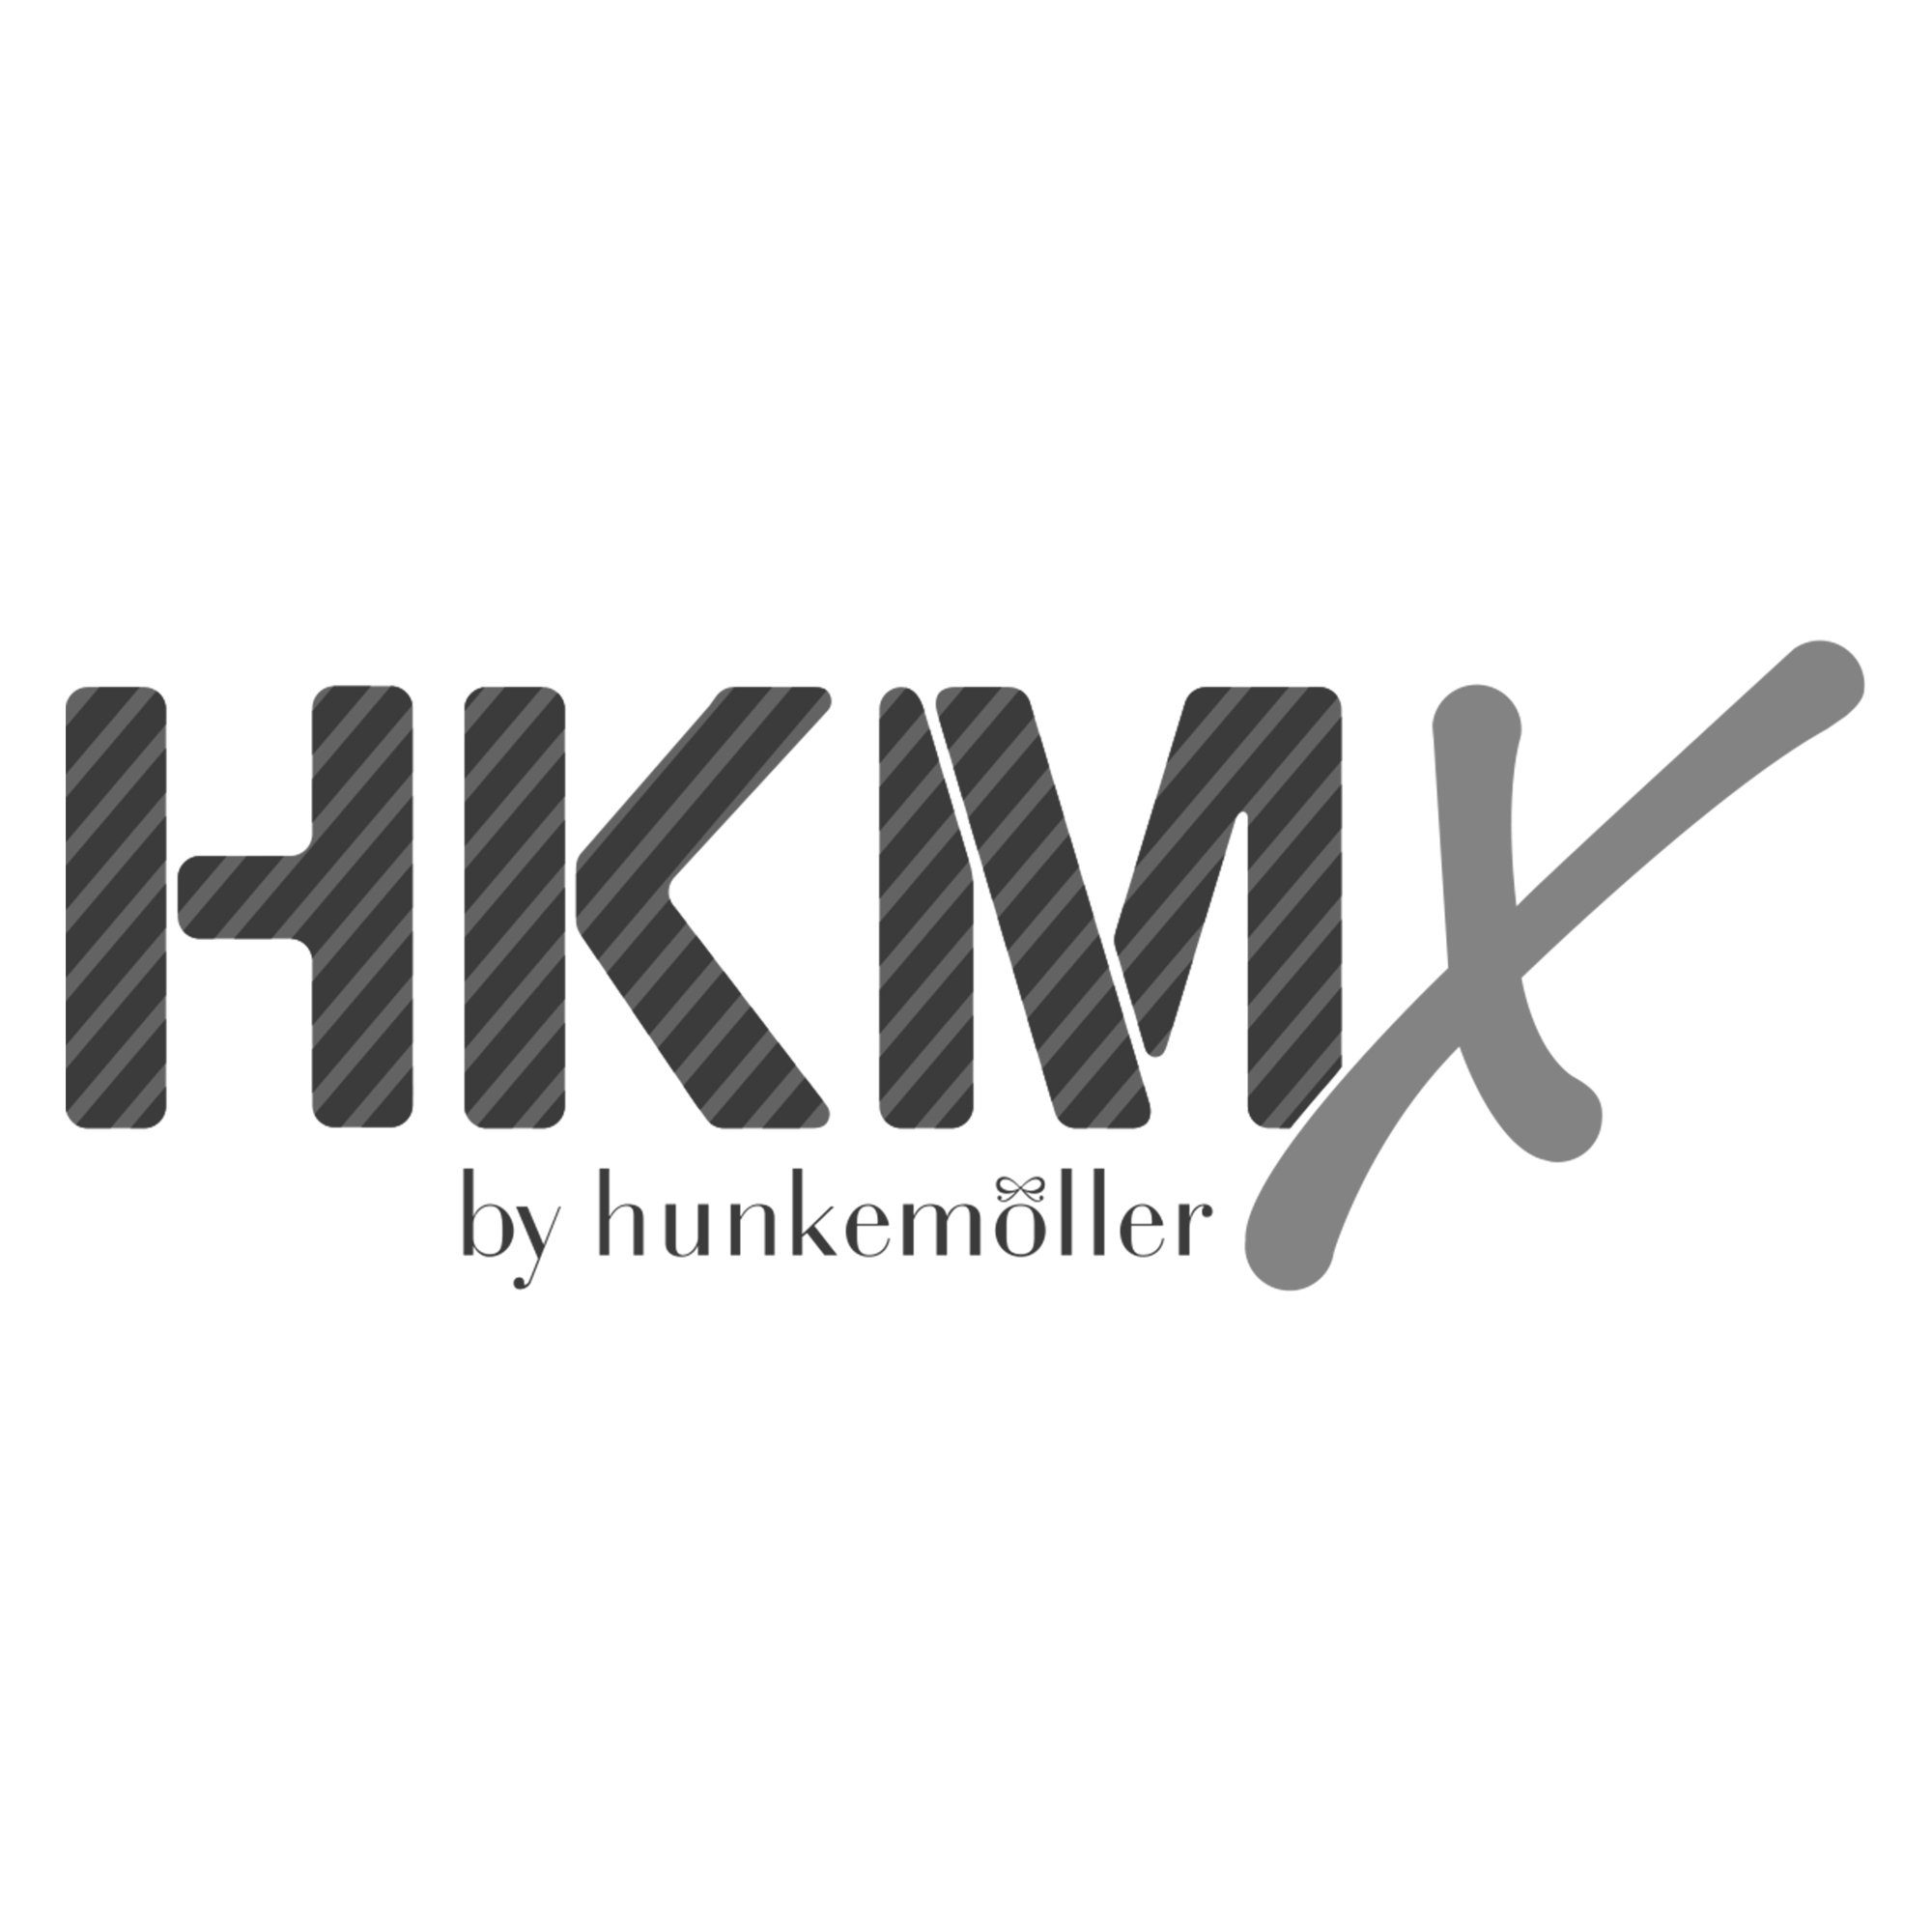 HKMX